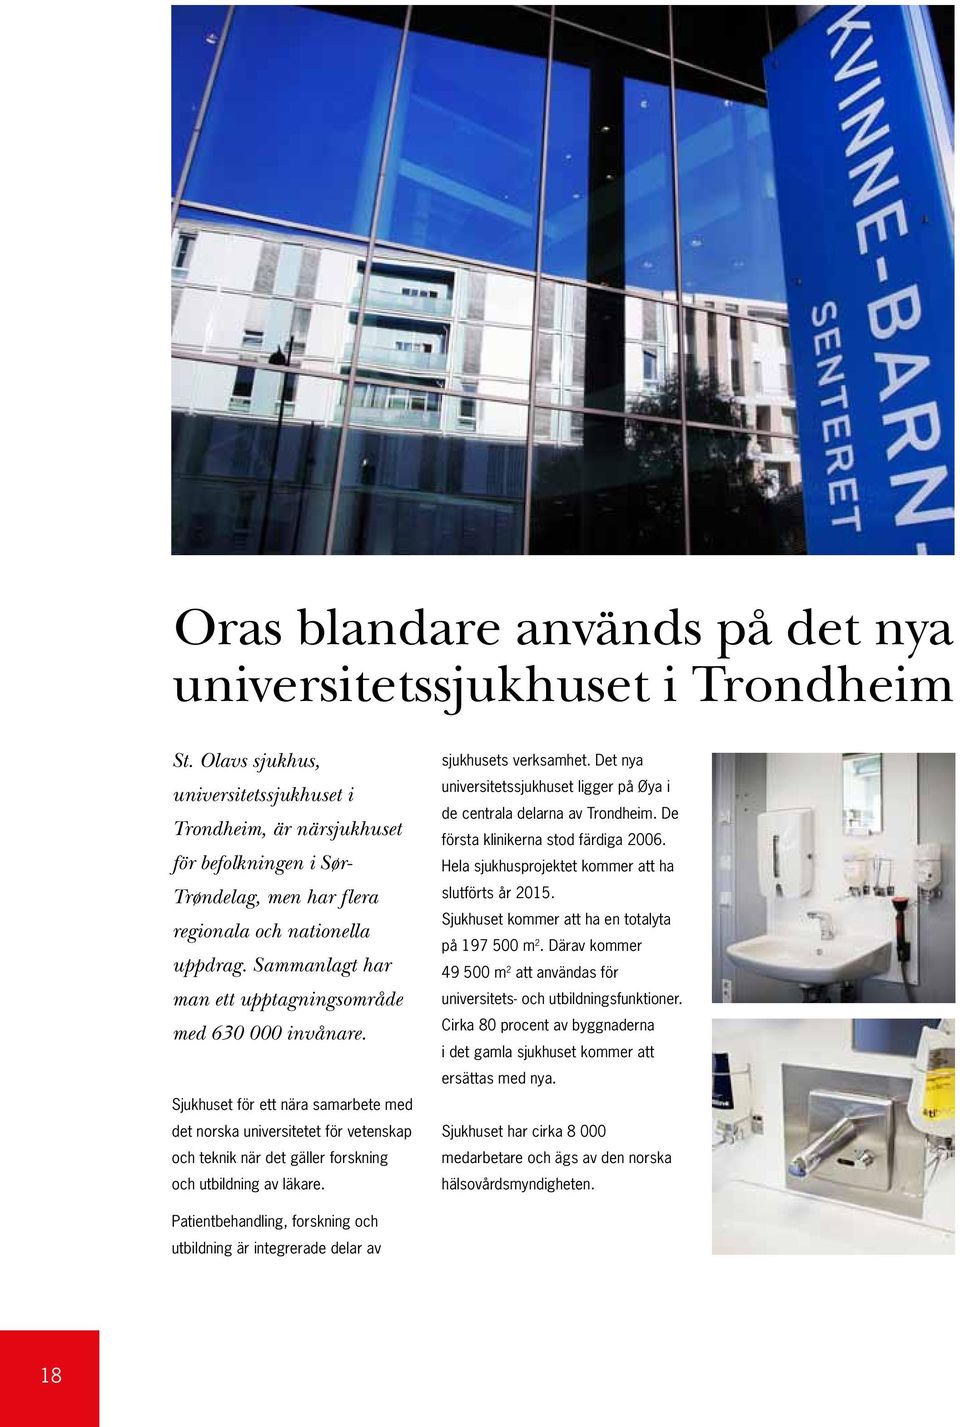 Sammanlagt har man ett upptagningsområde med 630 000 invånare. Sjukhuset för ett nära samarbete med det norska universitetet för vetenskap och teknik när det gäller forskning och utbildning av läkare.